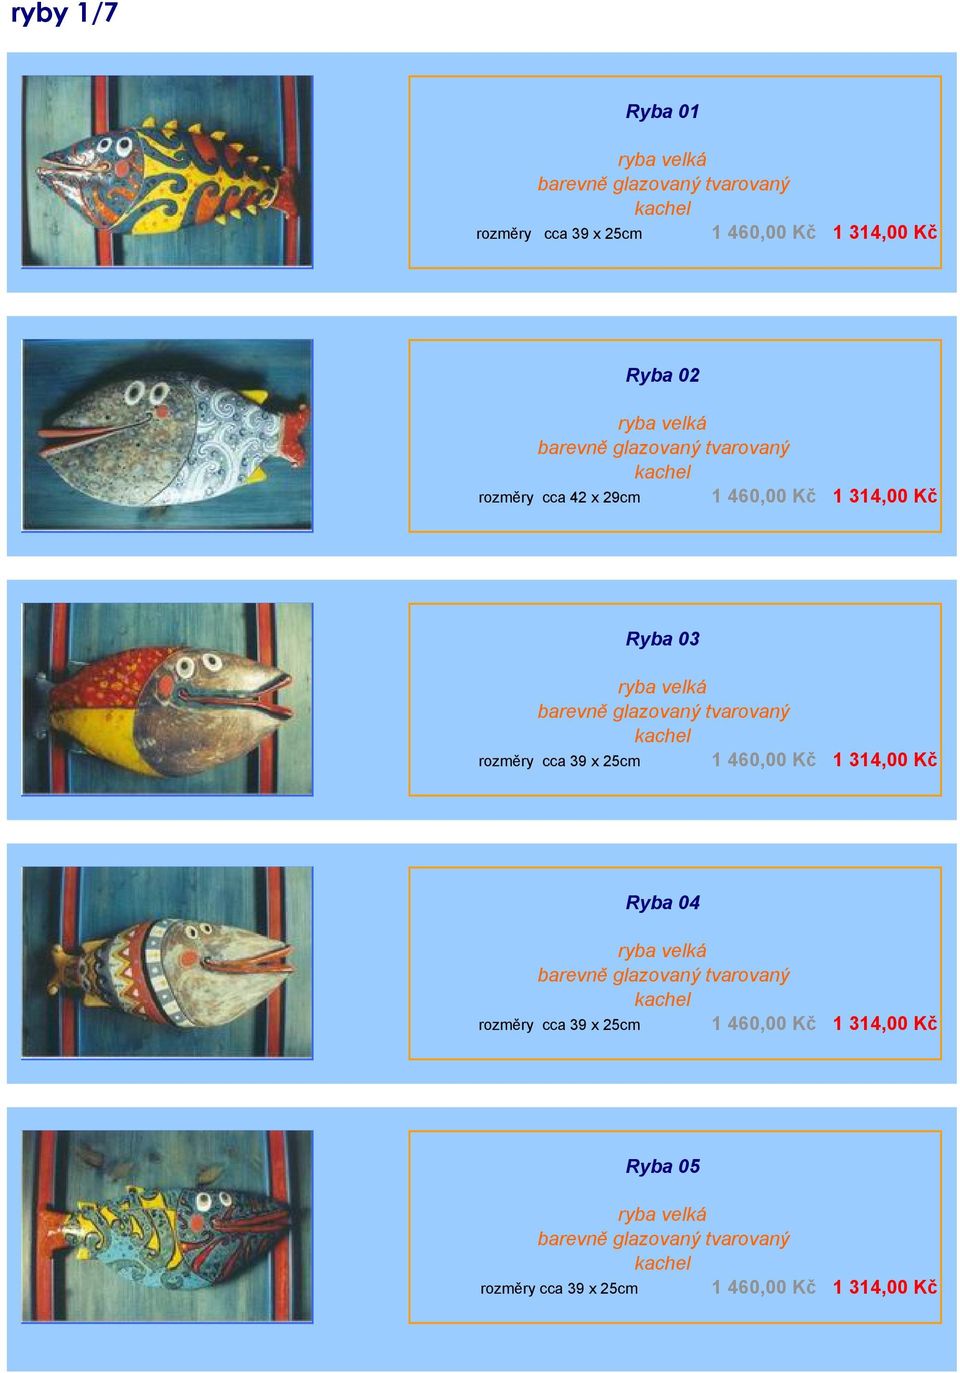 tvarovaný kachel 1 460,00 Kč 1 314,00 Kč rozměry cca 39 x 25cm Ryba 04 ryba velká barevně glazovaný tvarovaný kachel 1 460,00